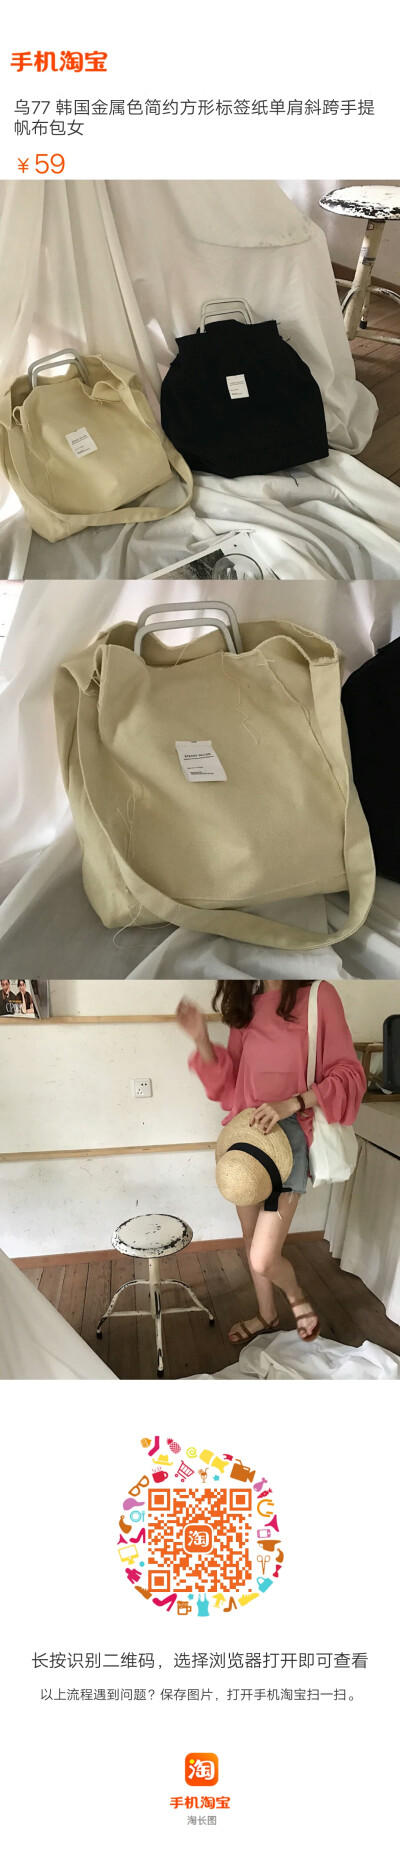 乌77 韩国金属色简约方形标签纸单肩斜跨手提帆布包女